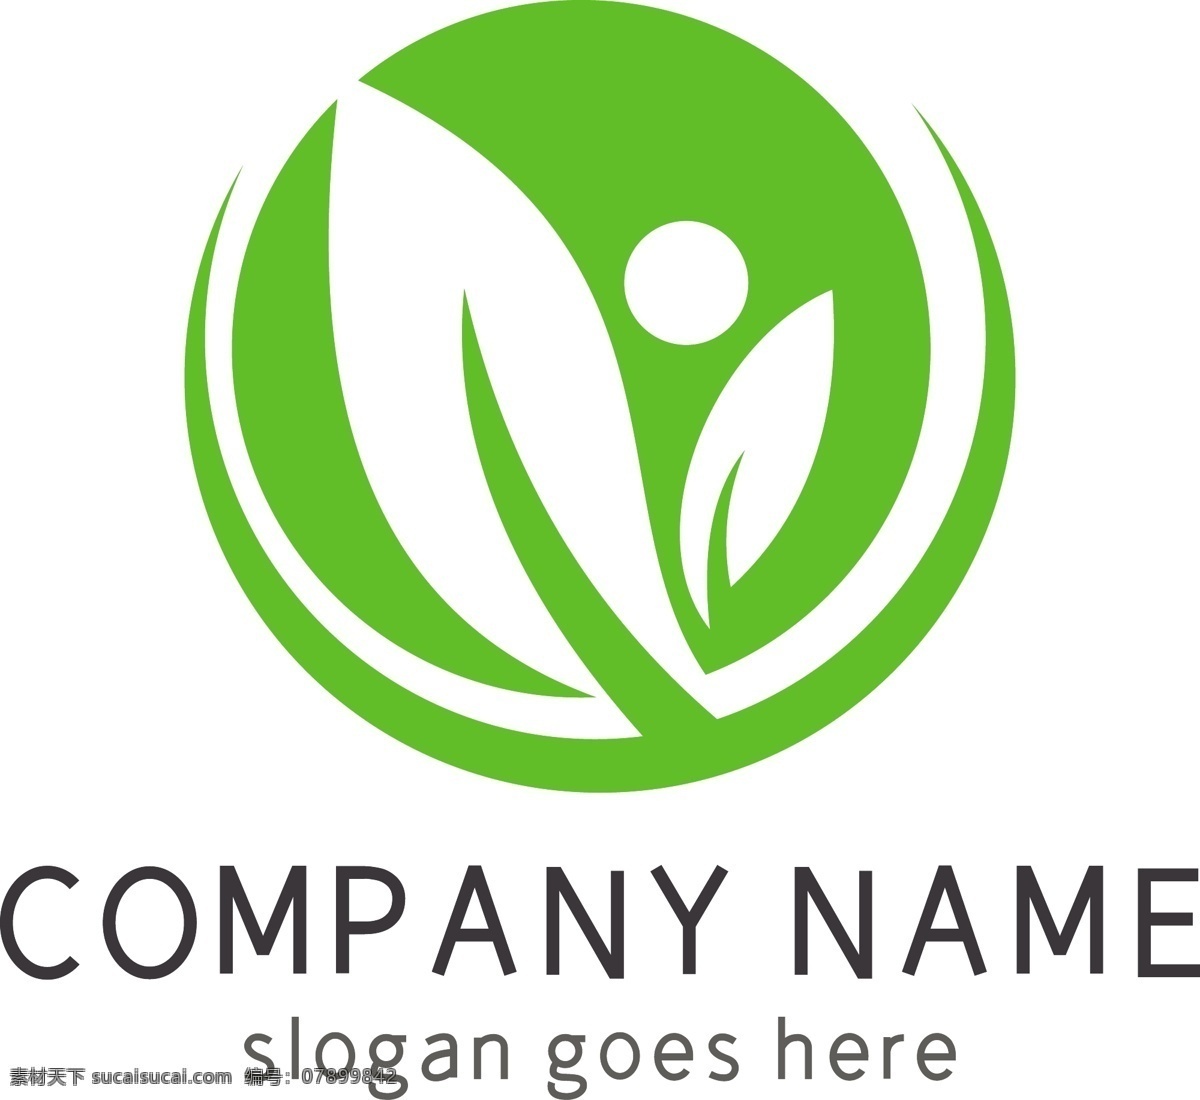 绿色 圆形 树叶 创意 简单 logo logo设计 圆形logo 树叶logo 创意logo 时尚logo 简单logo 简约 绿色logo